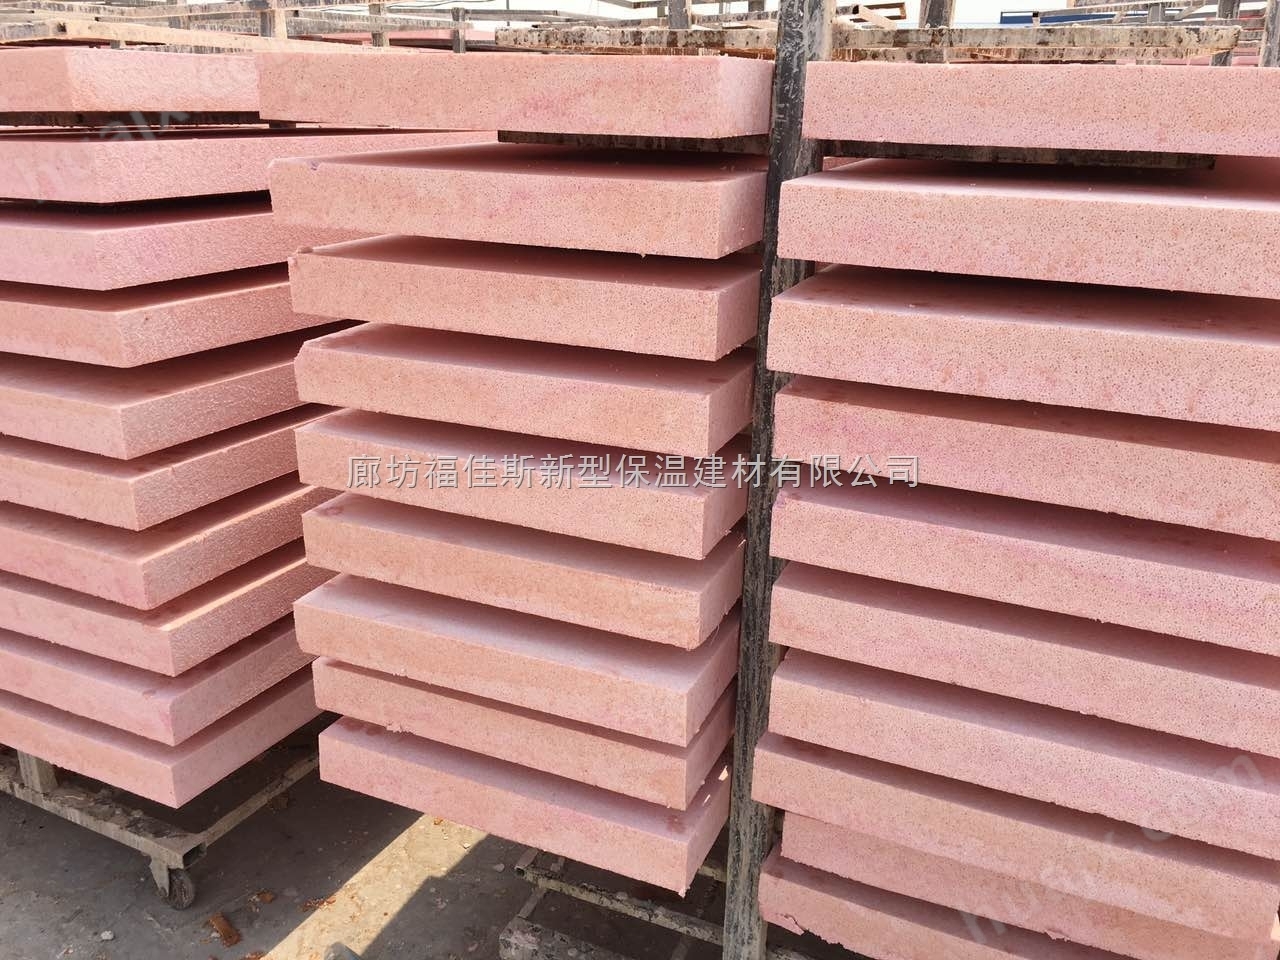 订购硅质板外墙硅质板AEPS保温板价格